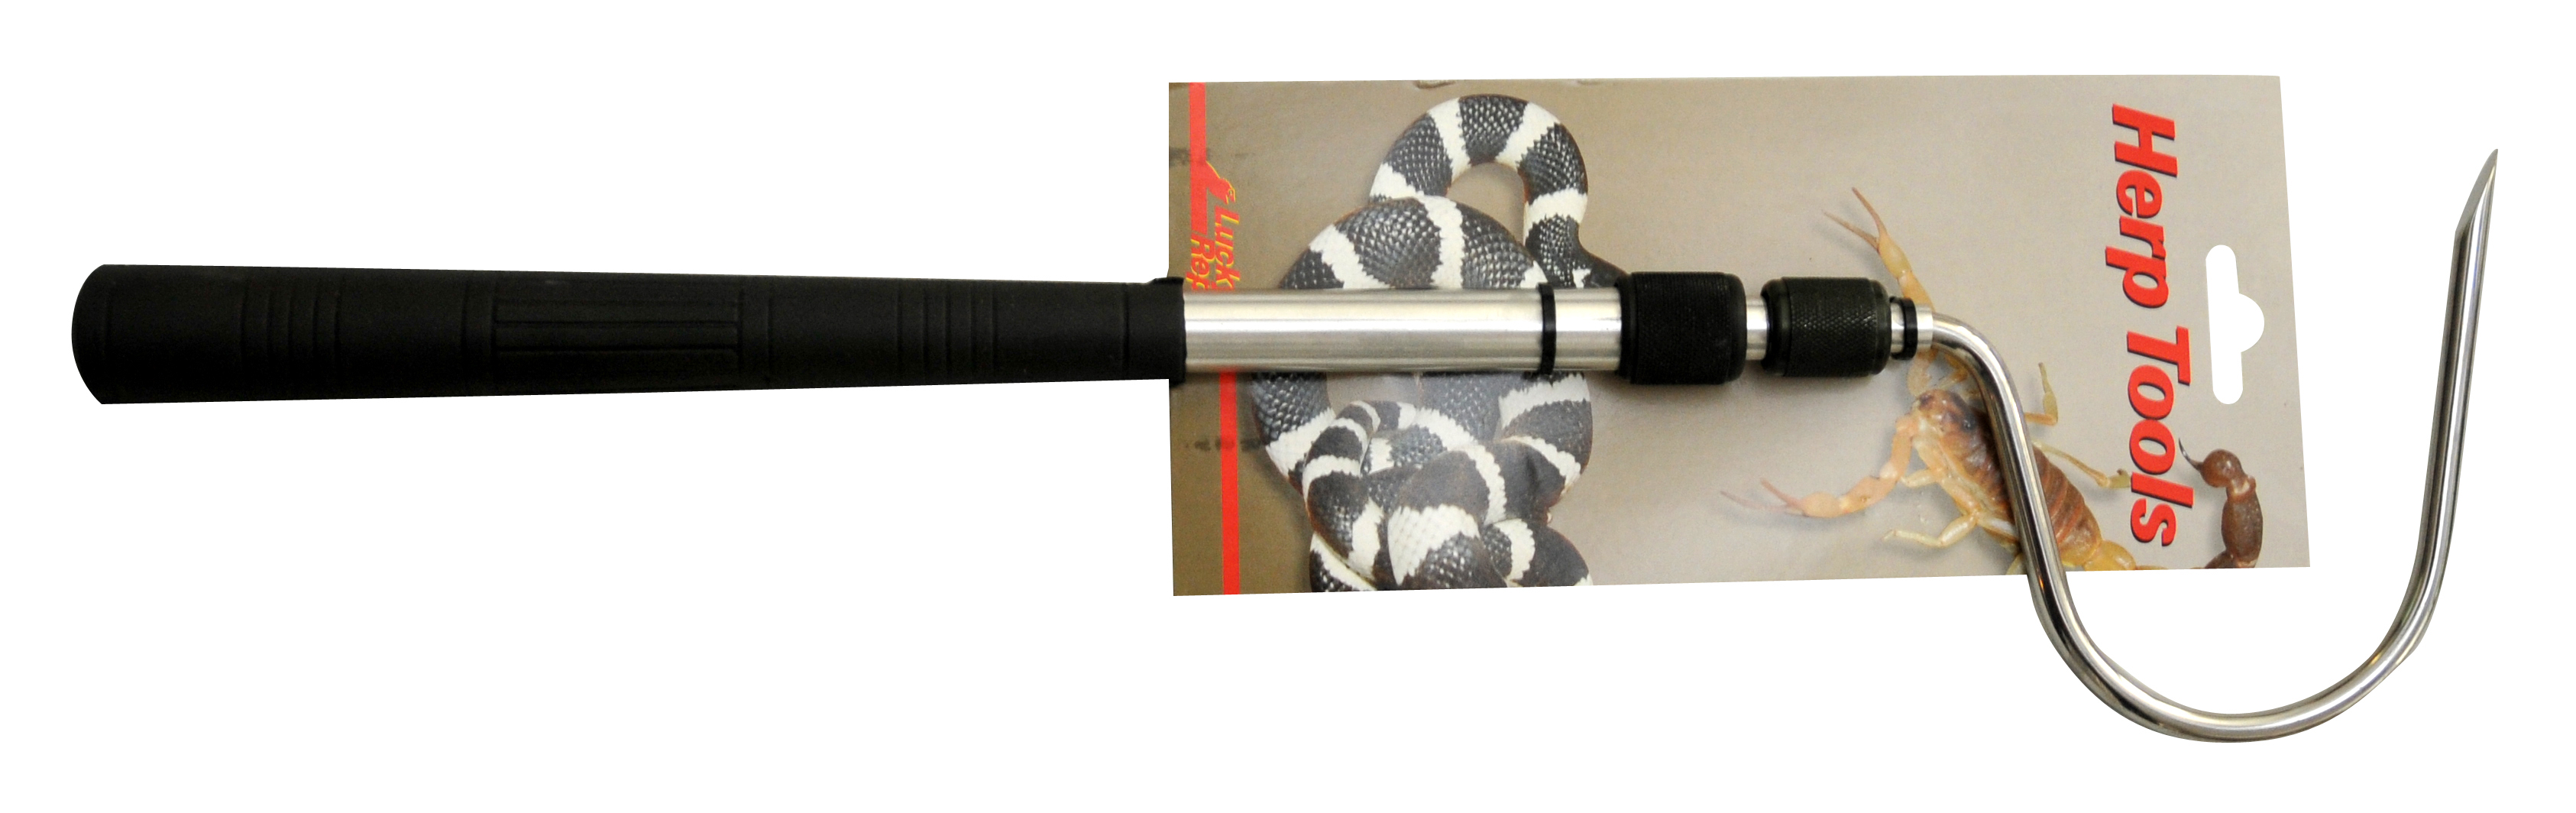 Крюк для обращения со змеями телескопический LUCKY REPTILE 